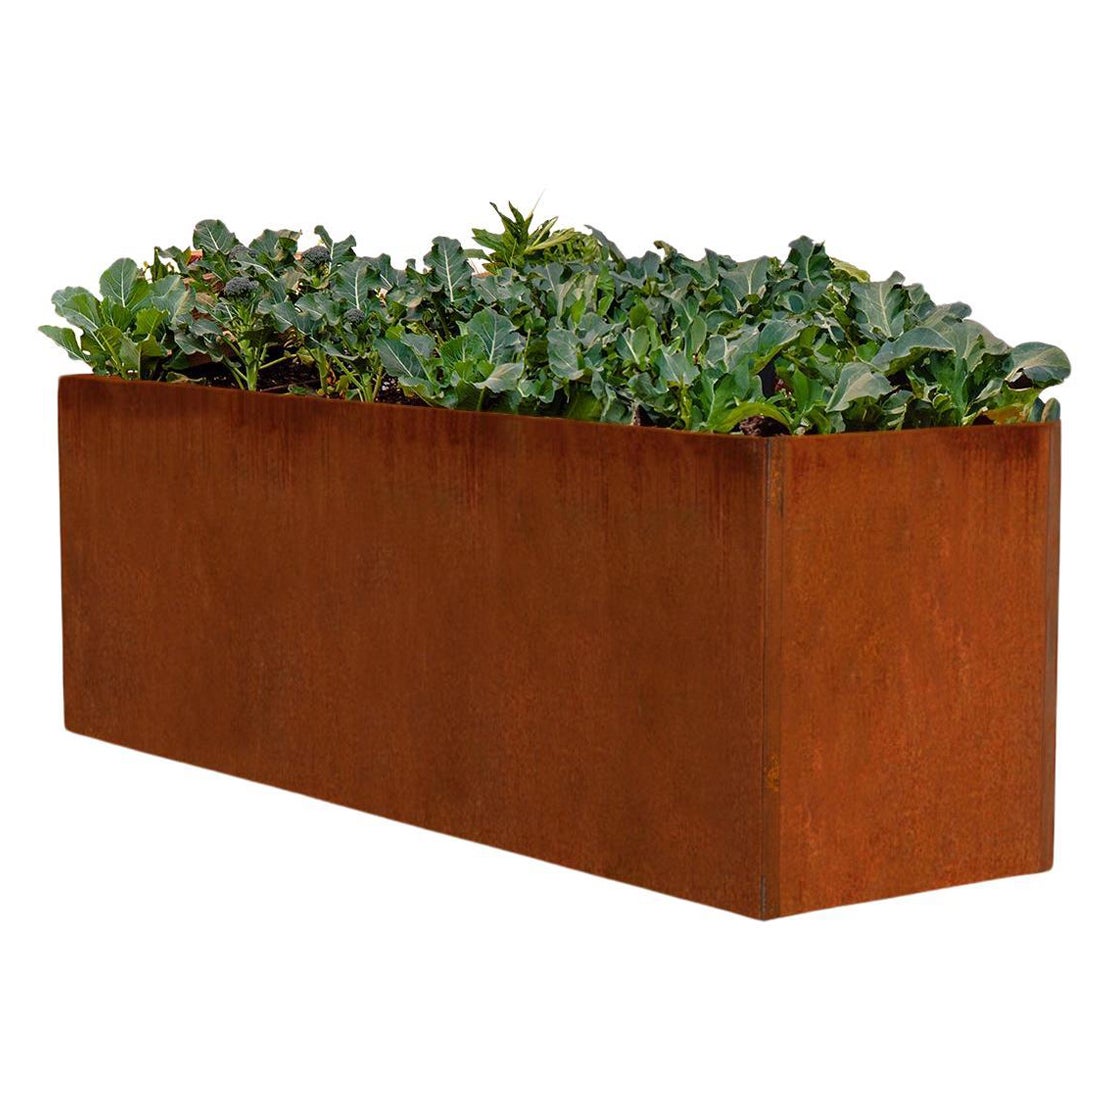 Corten Steel Planter or Edible Garden Box (6.5' X 2' X 2.5')